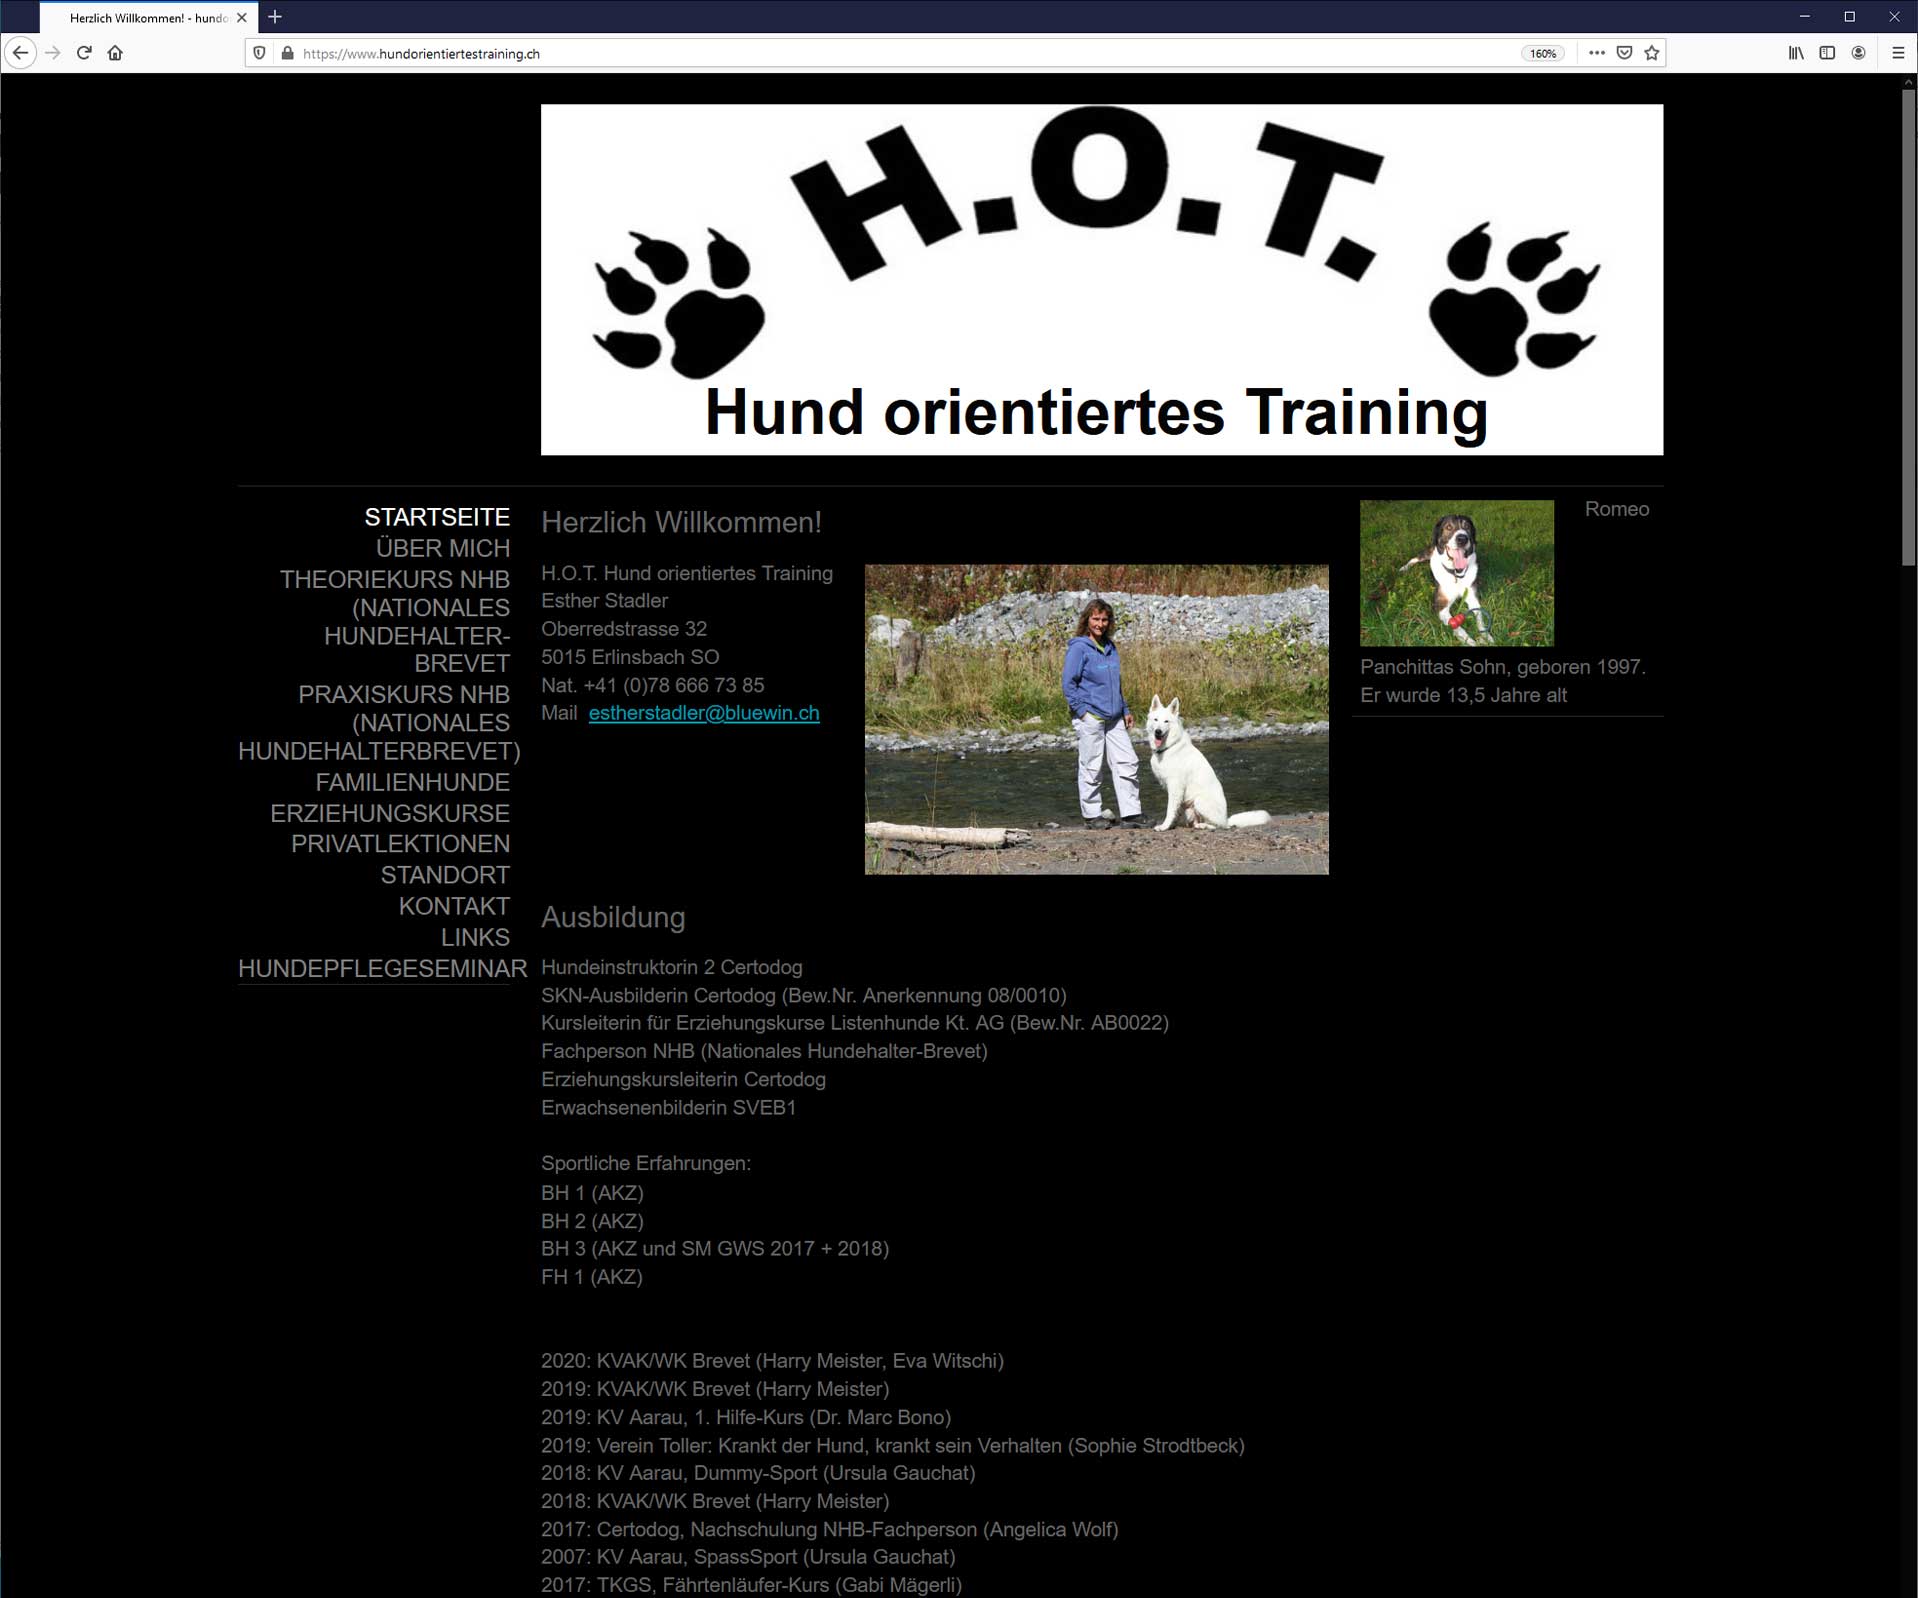 H.O.T. Hund orientiertes Training